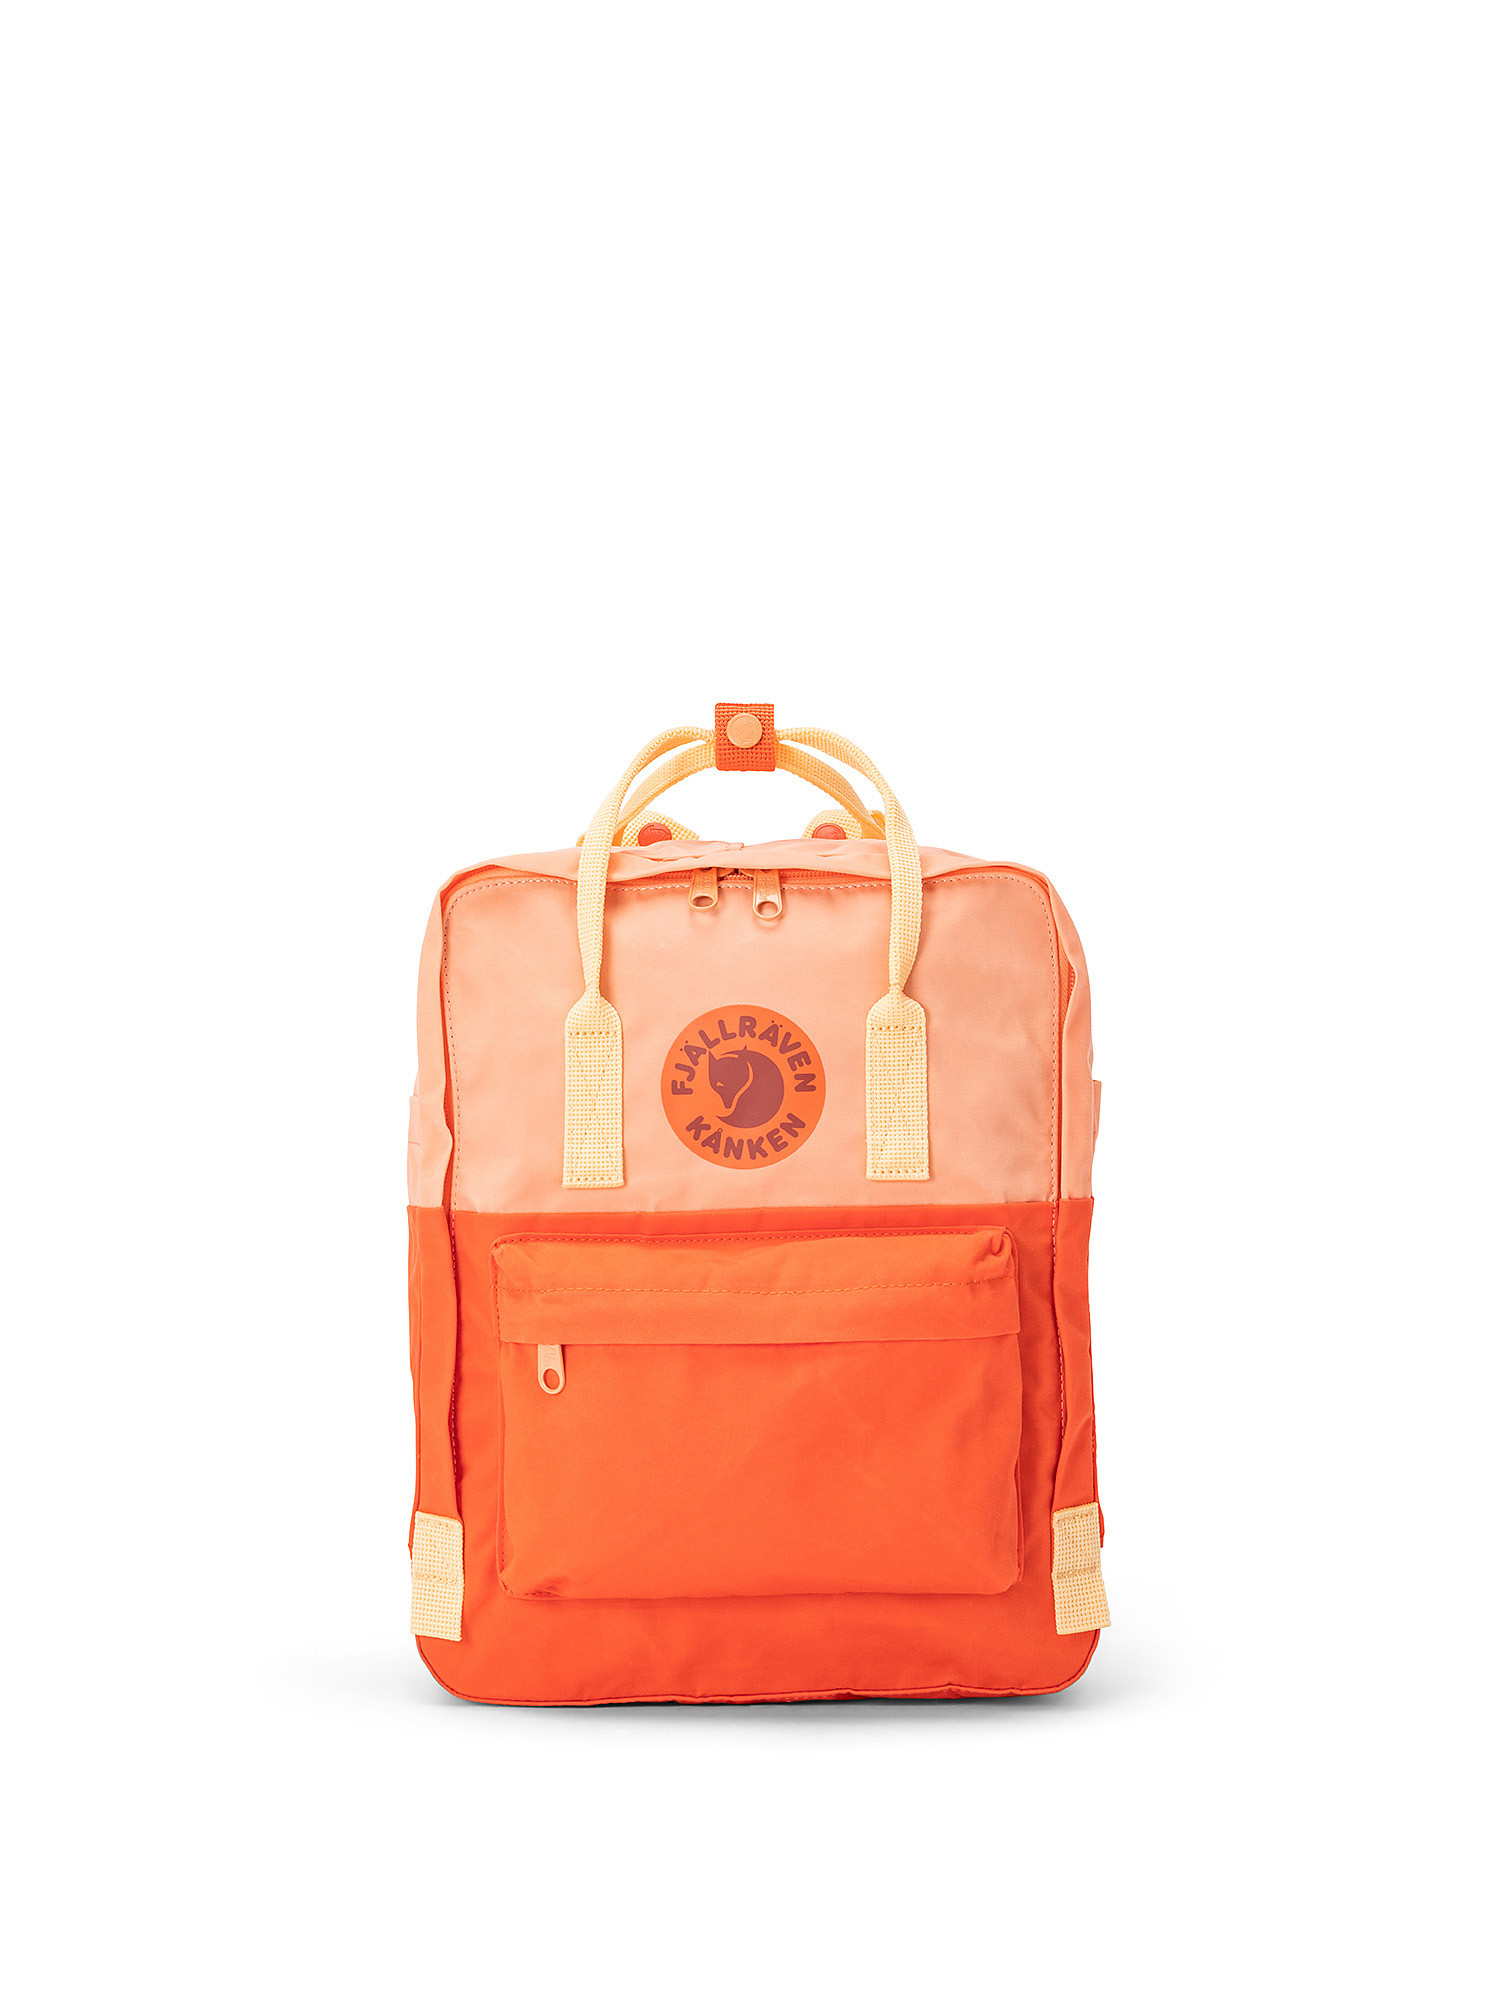 Backpack with adjustable shoulder straps, Red, large image number 0